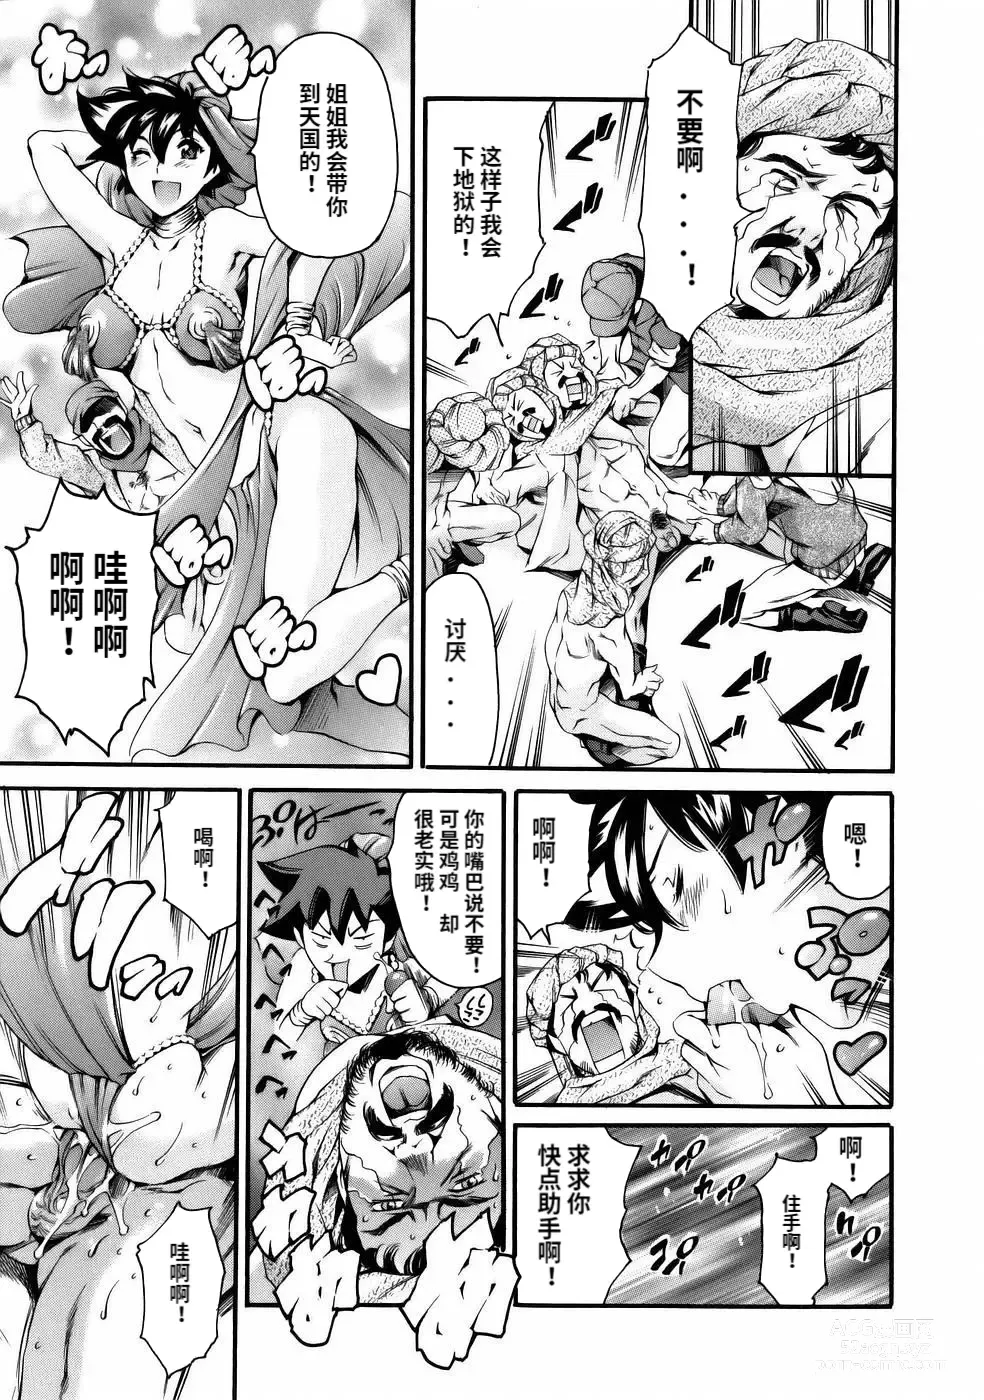 Page 21 of manga Manga Naze Nani Kyoushitsu